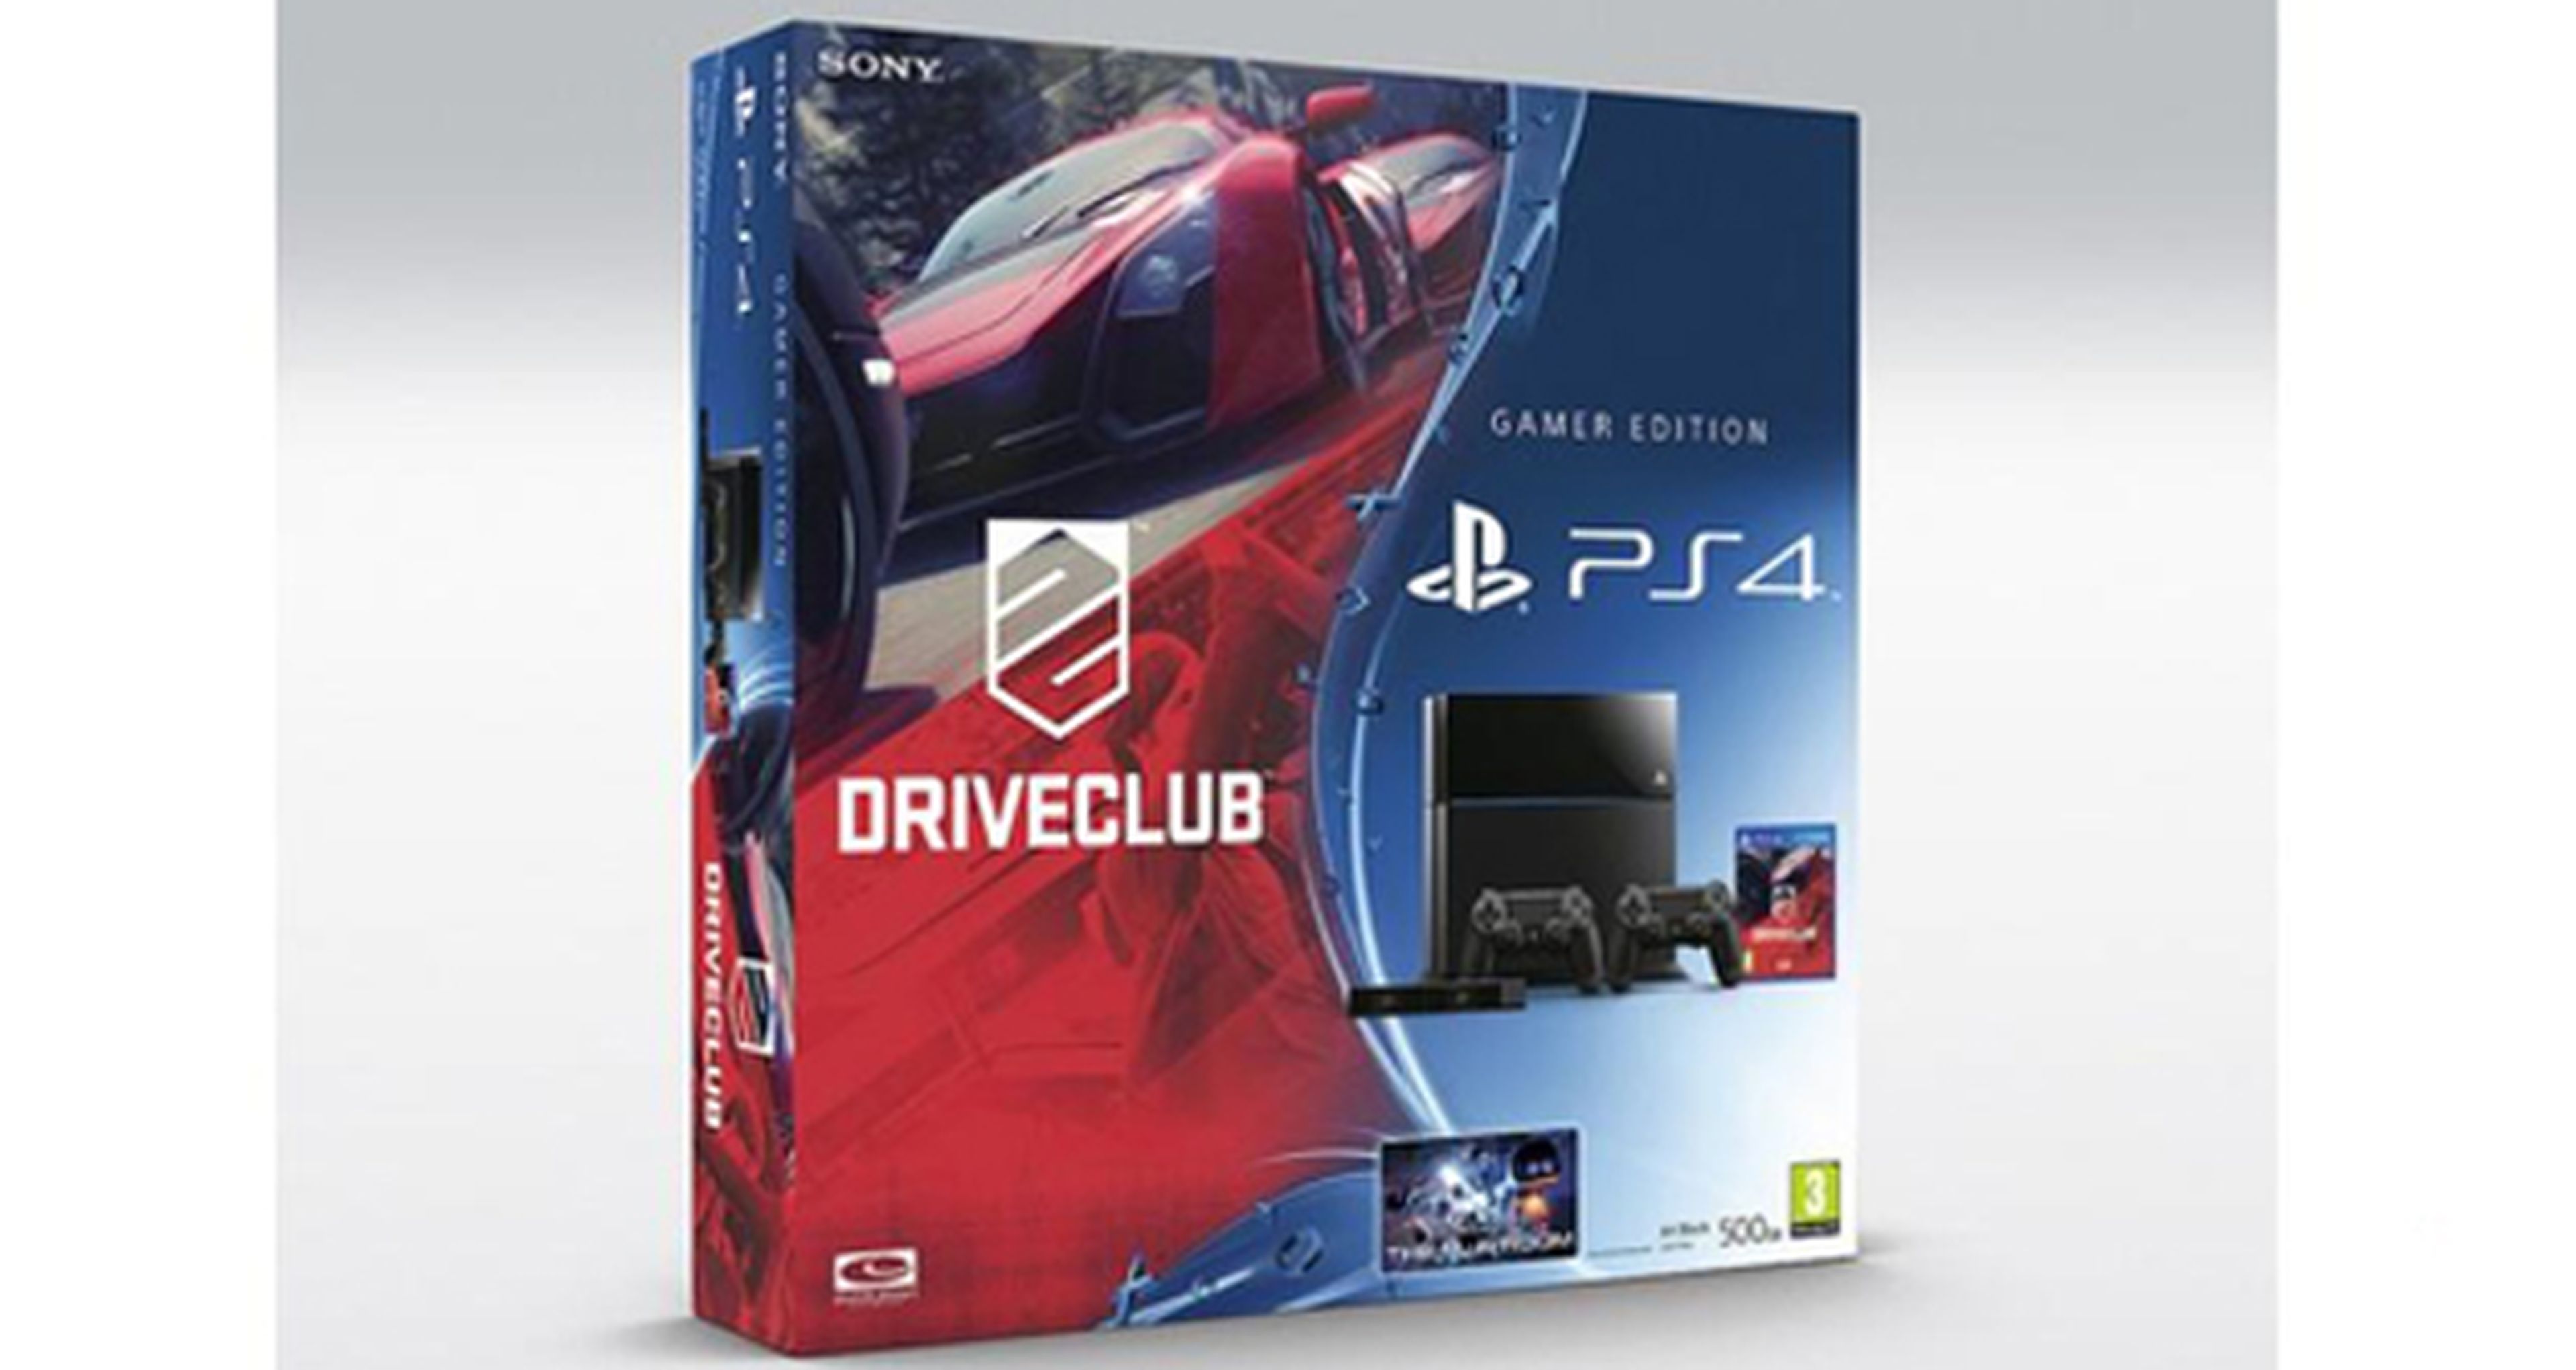 Anunciados dos nuevos packs de PS4 junto a DriveClub